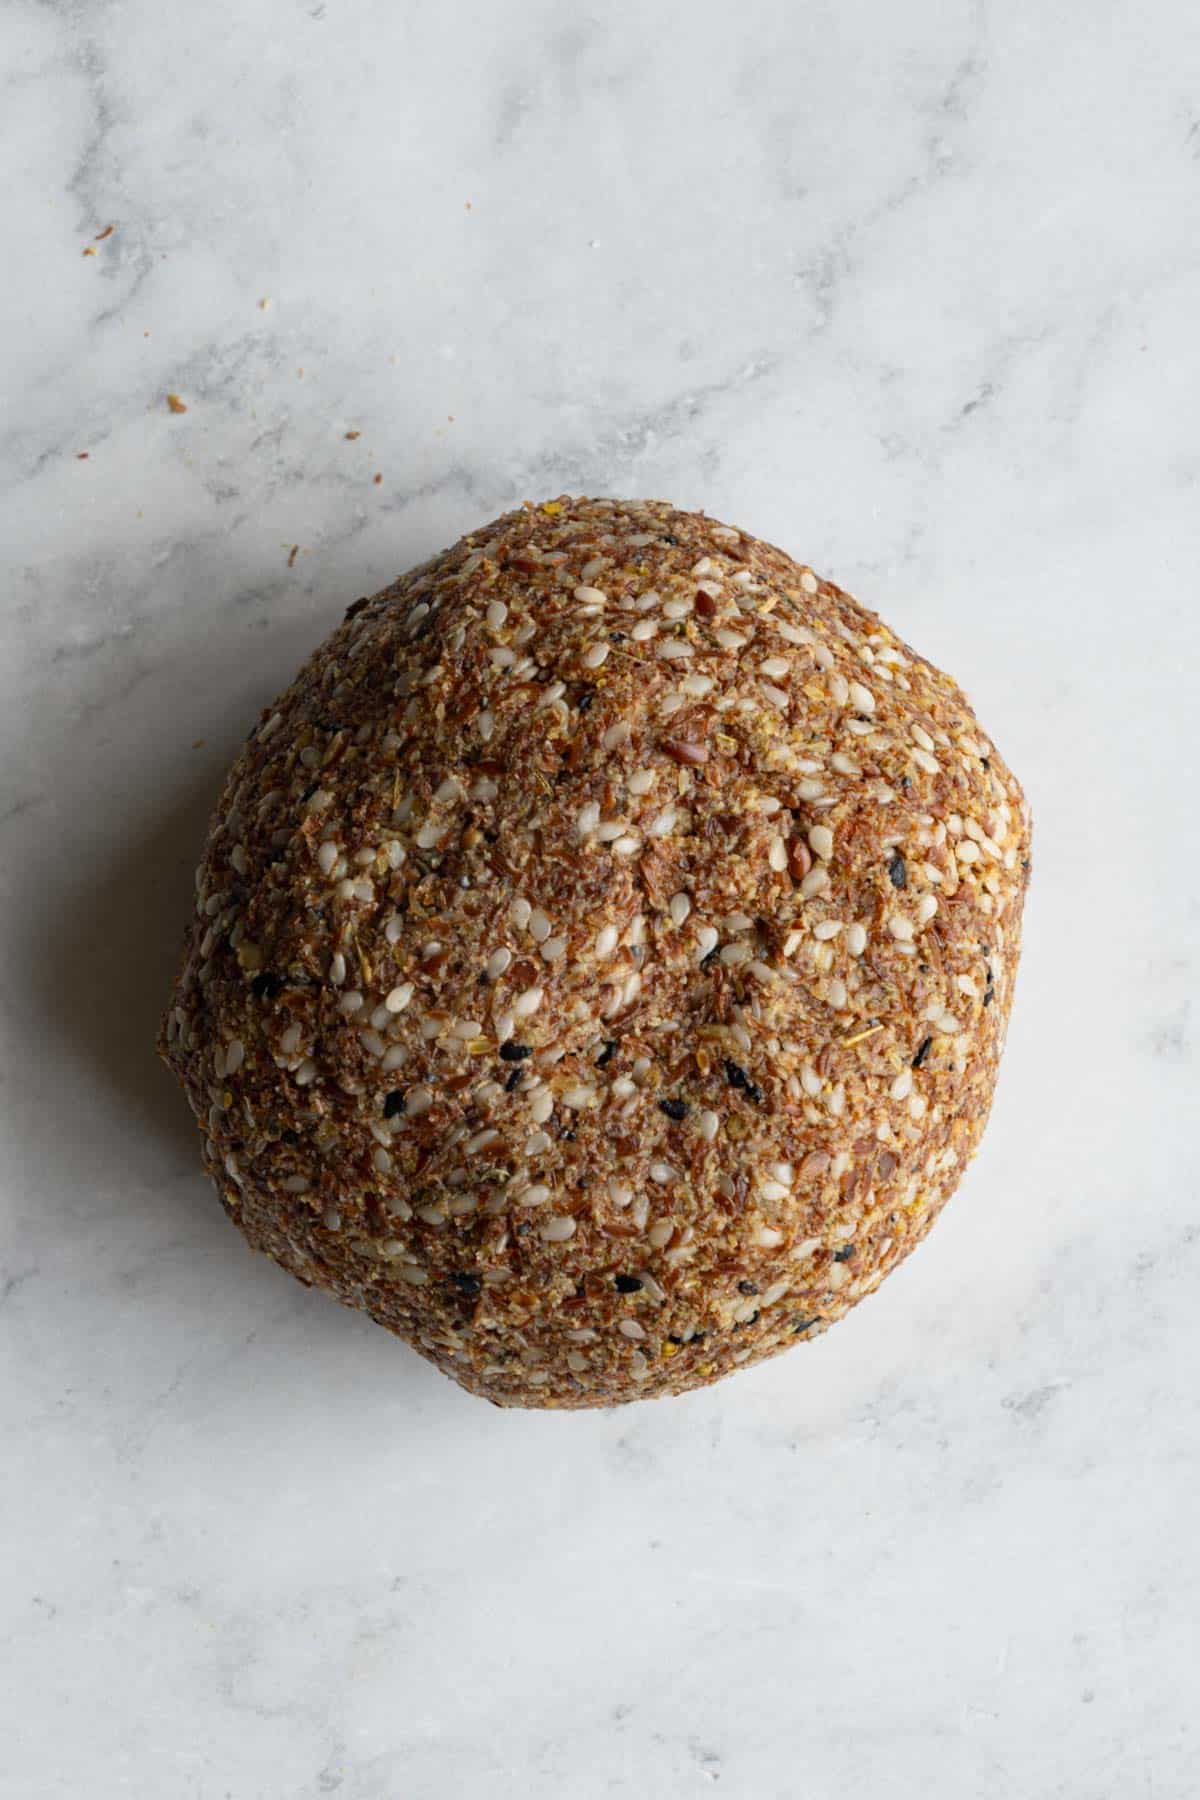 Flax seed dough shaped like a ball.